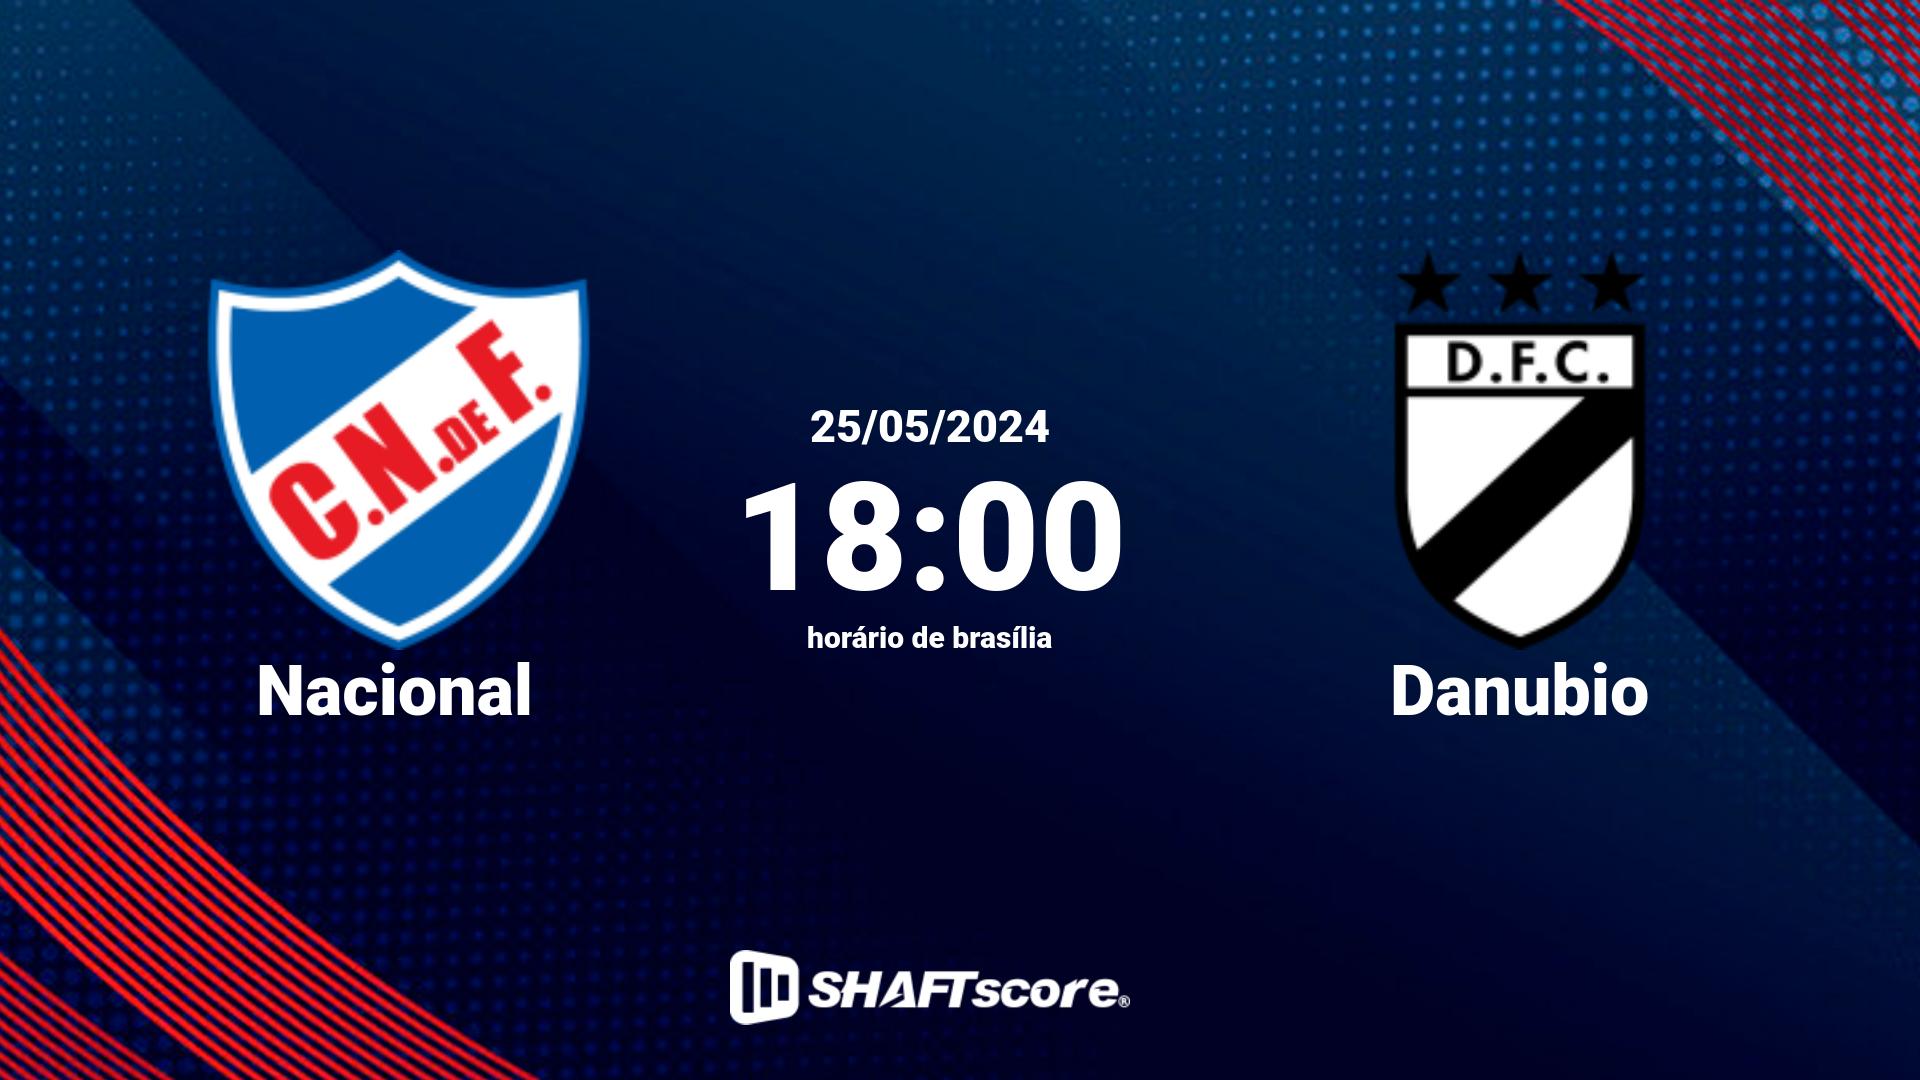 Estatísticas do jogo Nacional vs Danubio 25.05 18:00